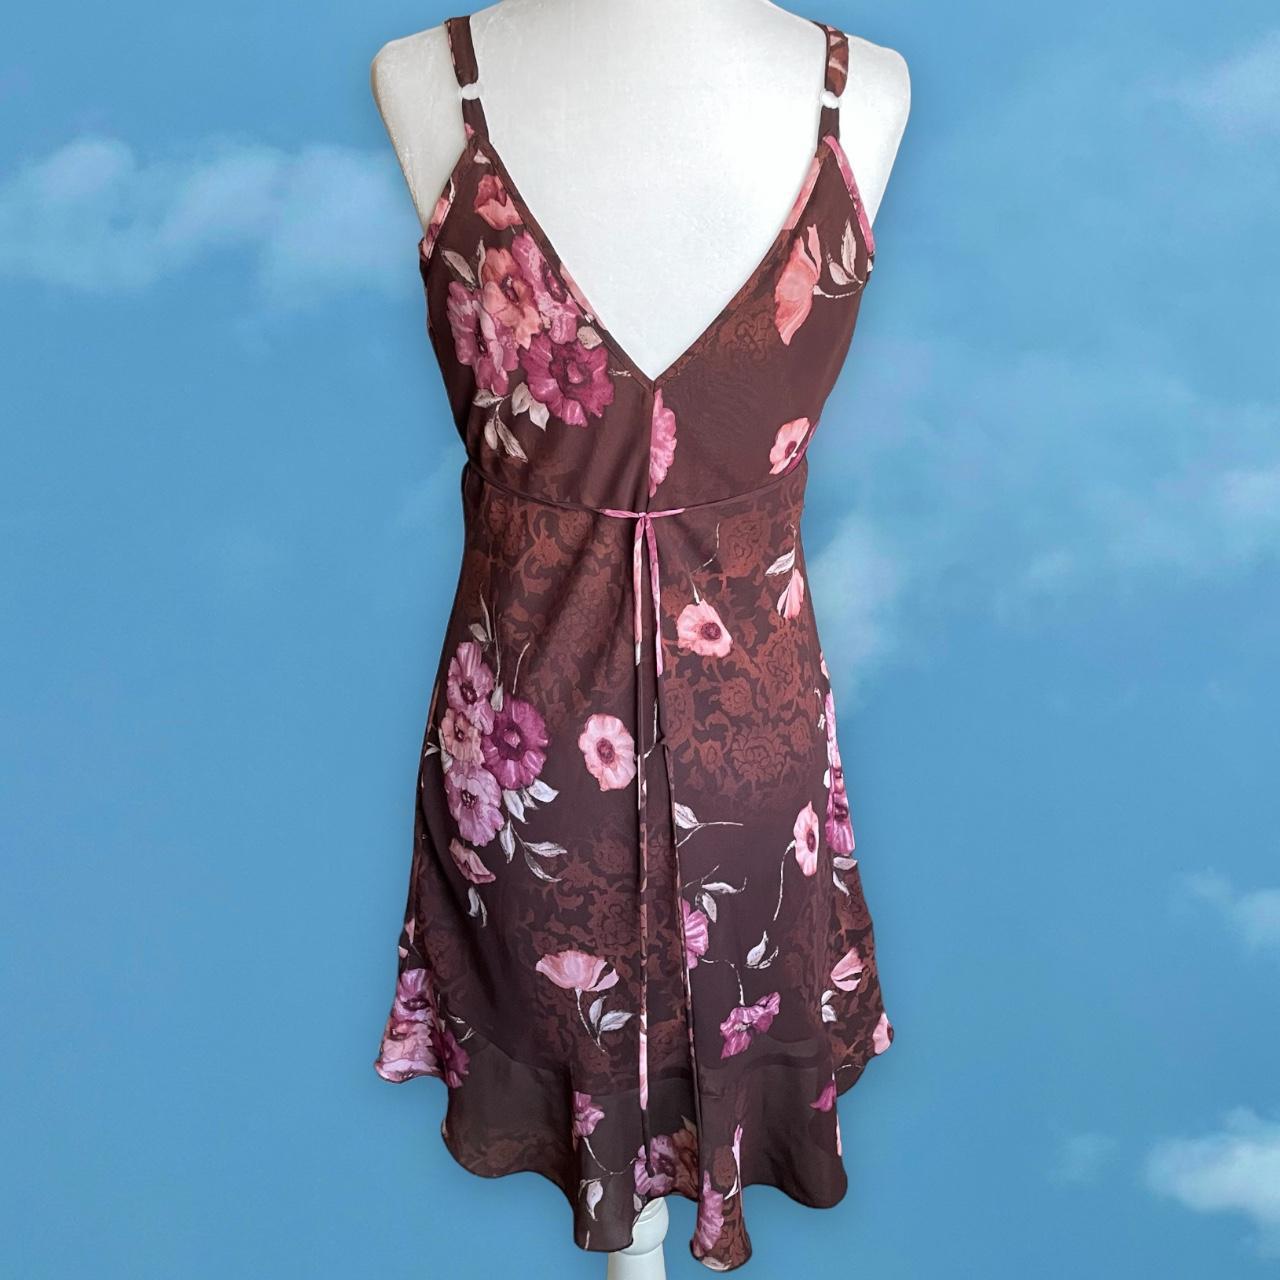 Product Image 3 - Vintage Floral Slip Dress 
brand: